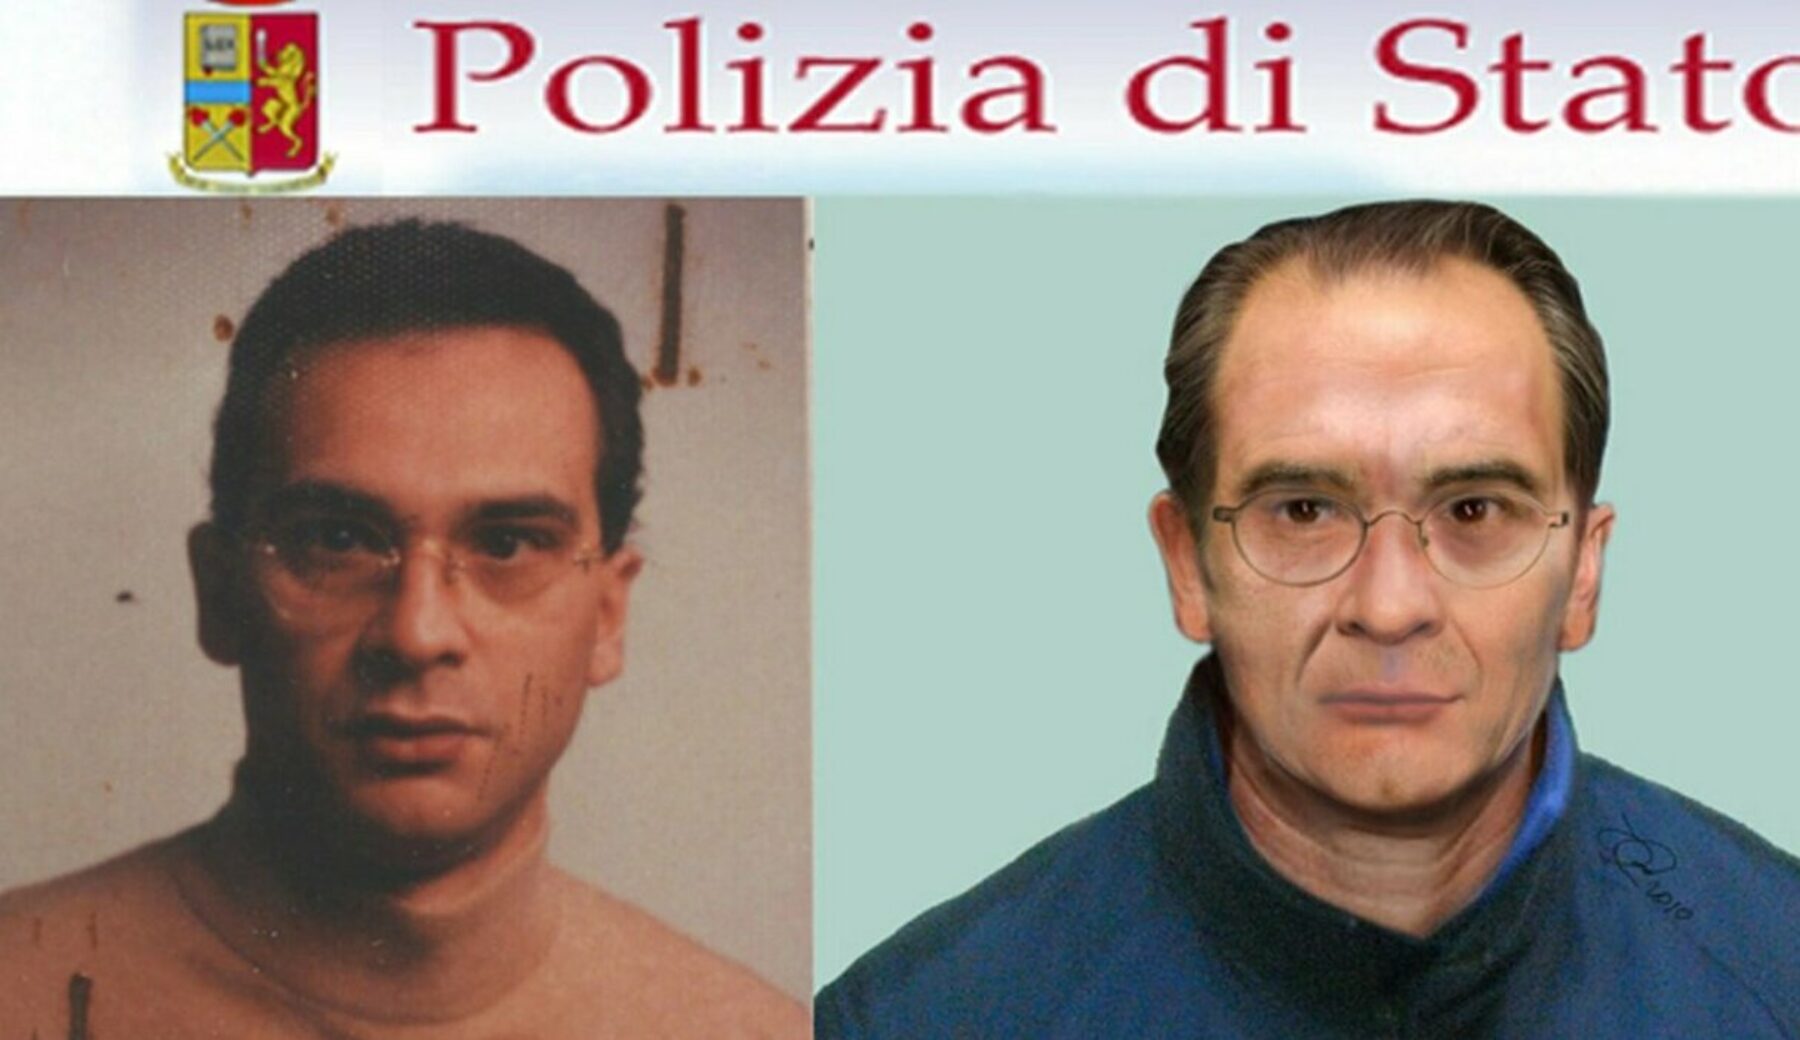 L’arresto di Messina Denaro, giorno storico per la lotta alla mafia